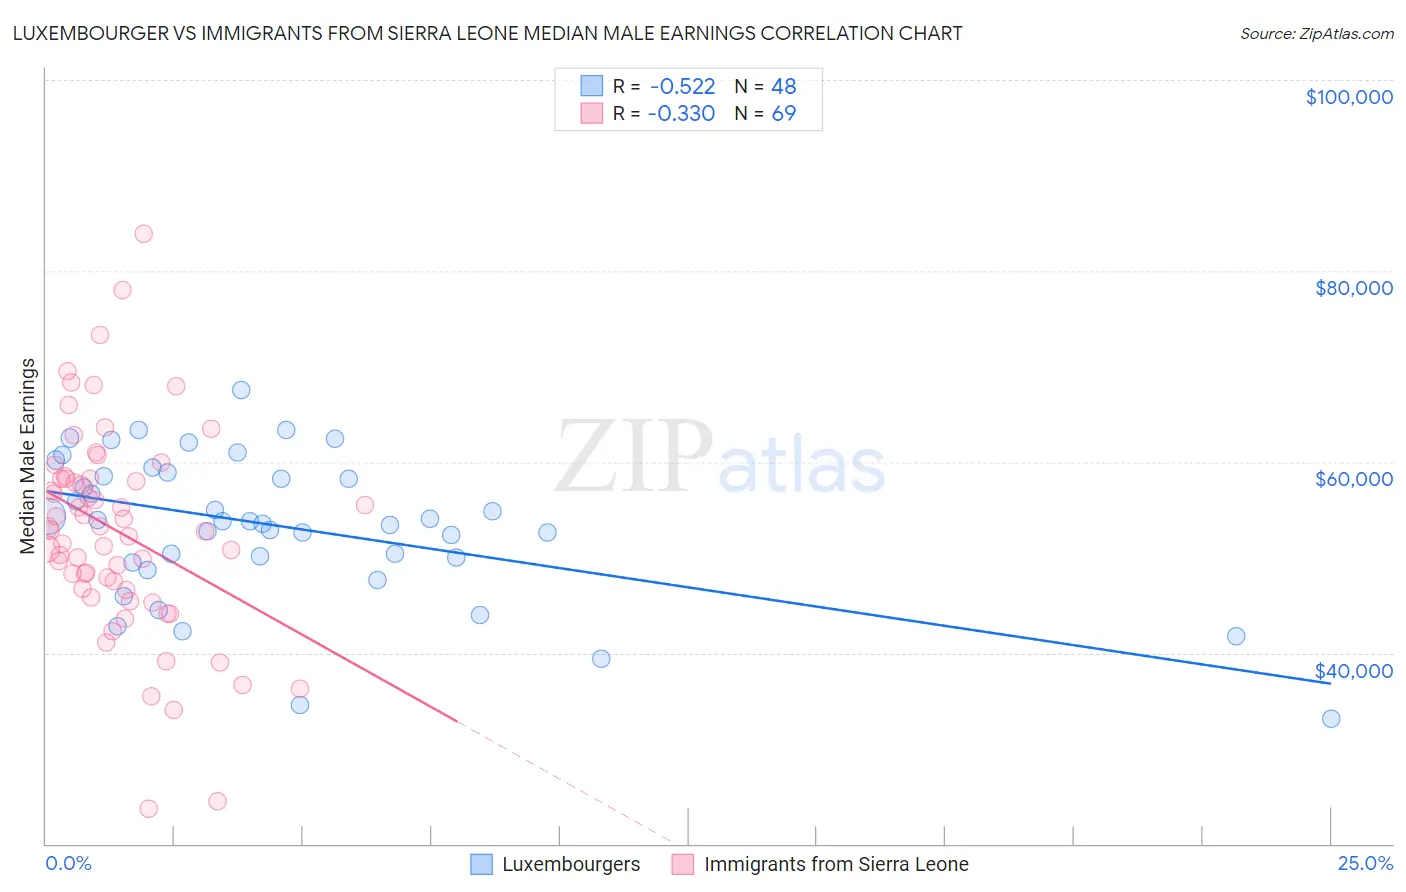 Luxembourger vs Immigrants from Sierra Leone Median Male Earnings